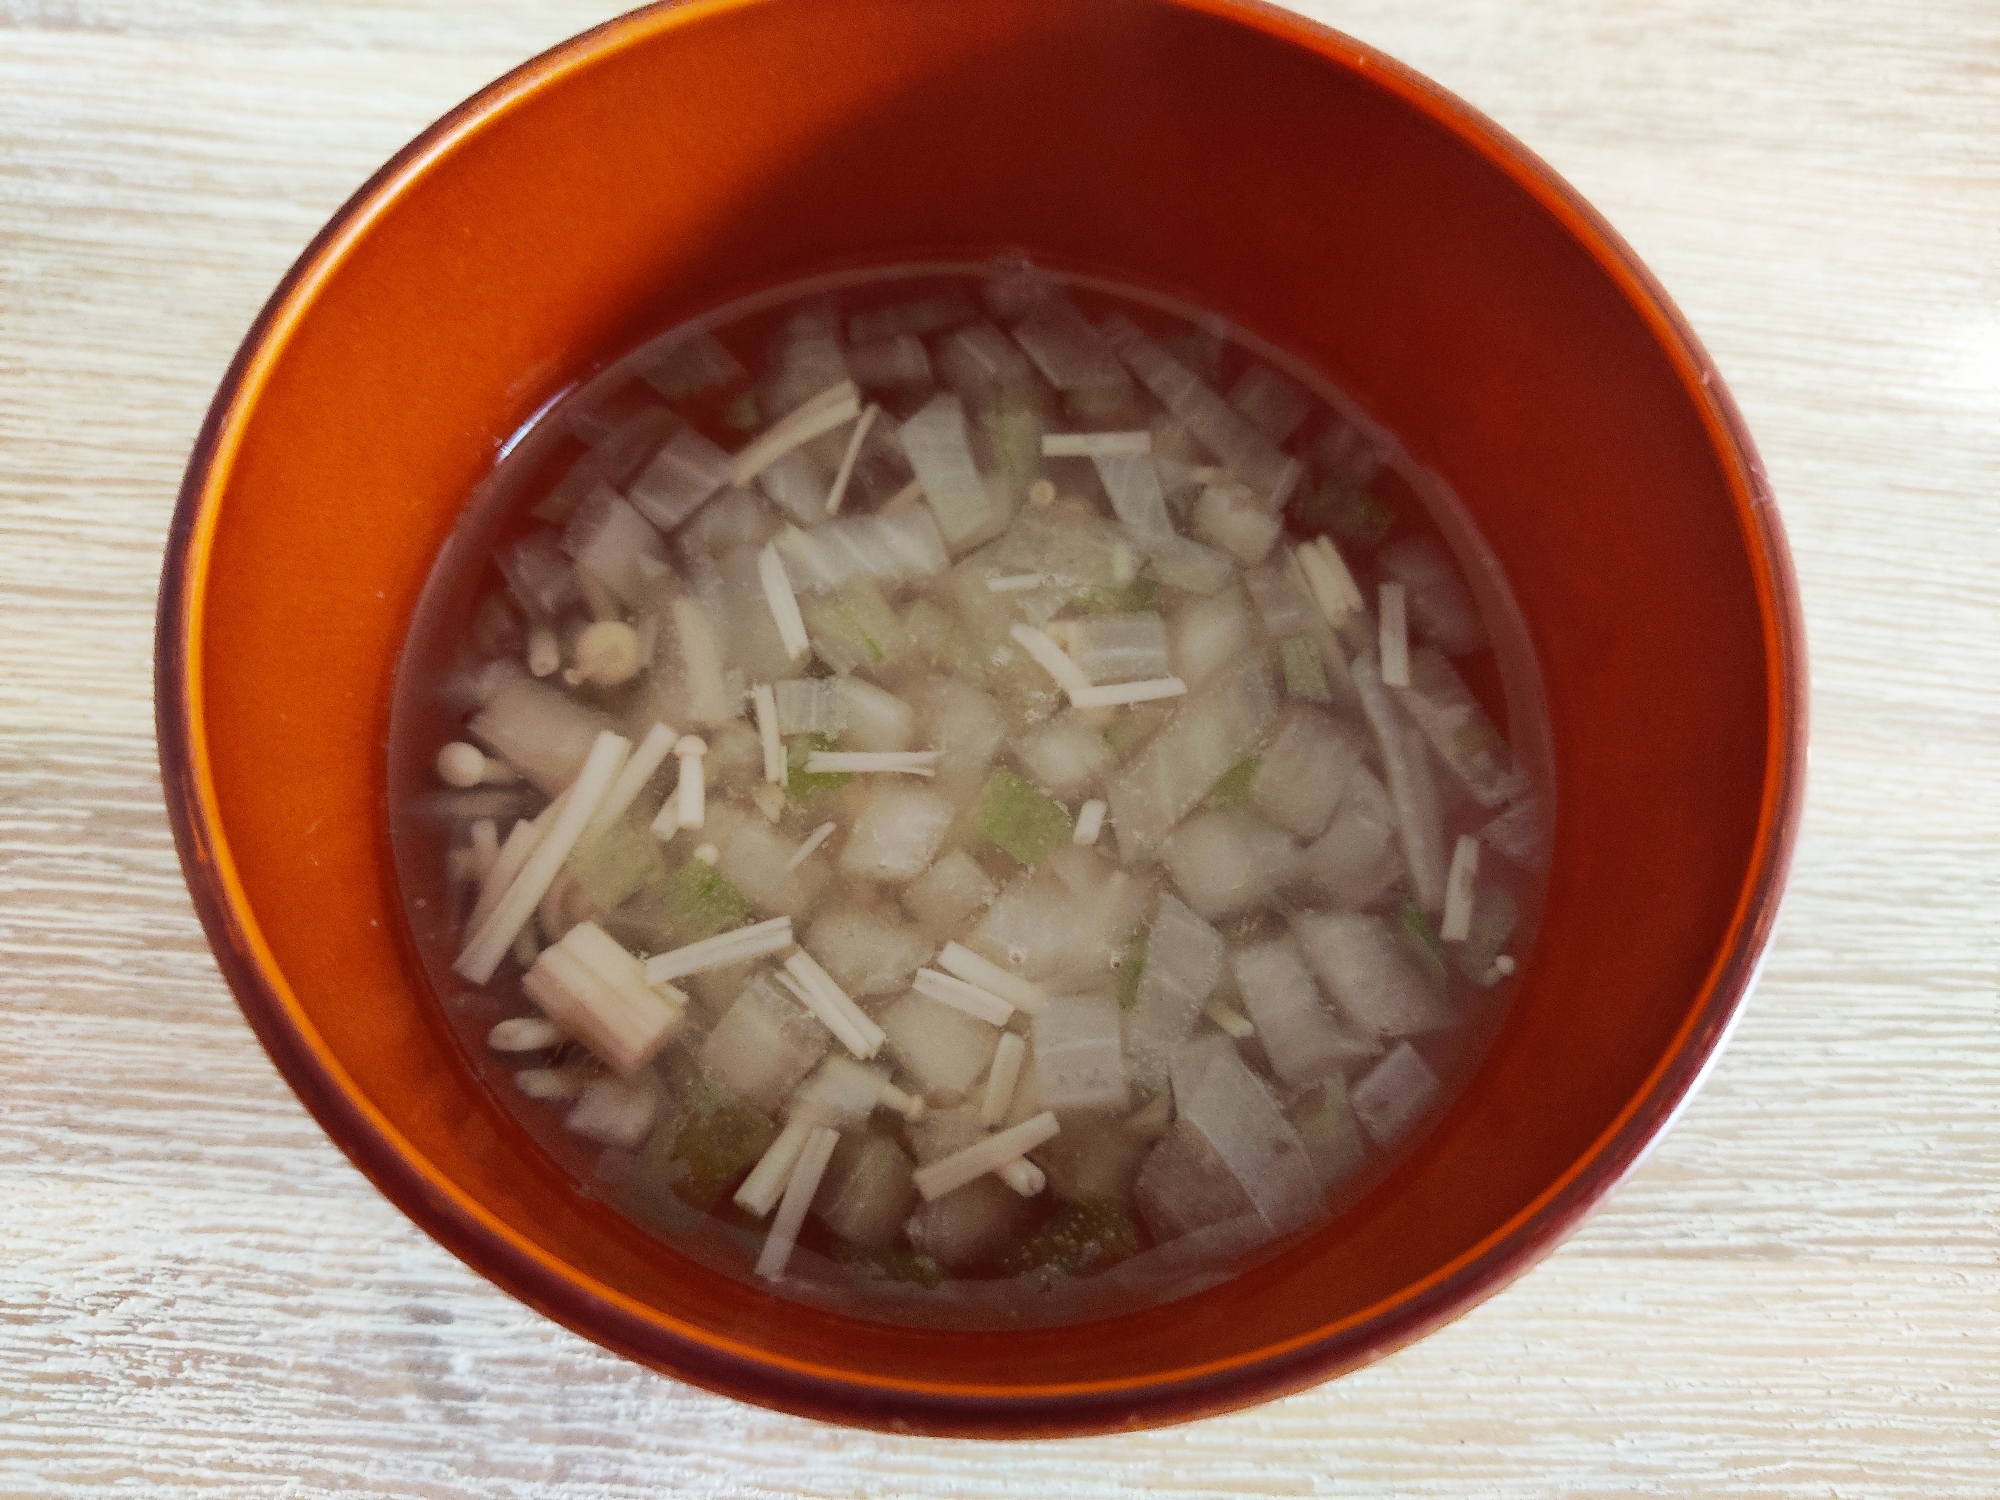 子どもも食べやすい☆新玉ねぎとえのきの中華スープ